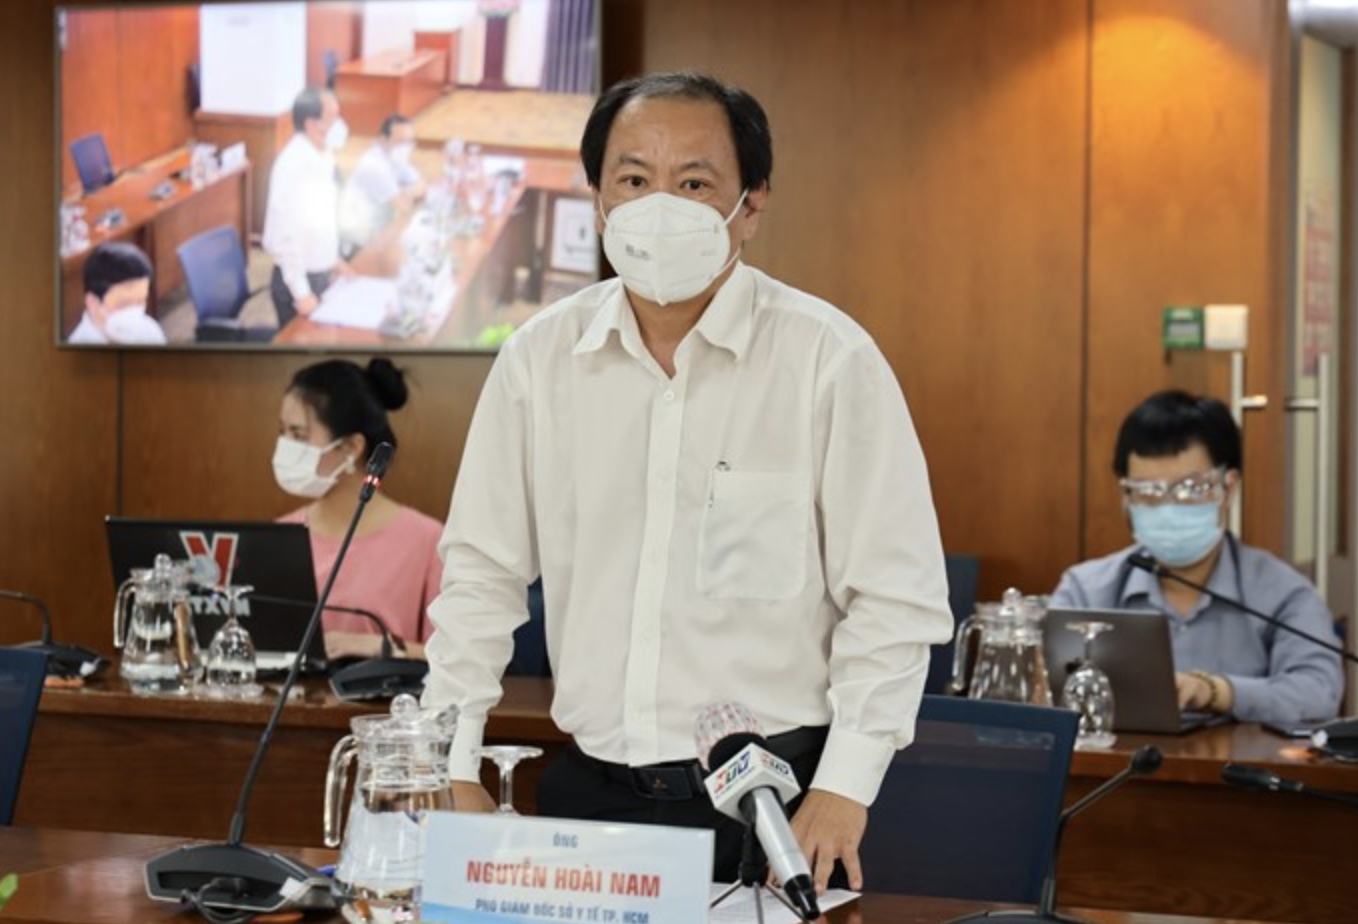 Phó Giám đốc Sở Y tế Võ Hoài Nam thông tin tại cuộc họp. Ảnh: Huyên Nguyễn